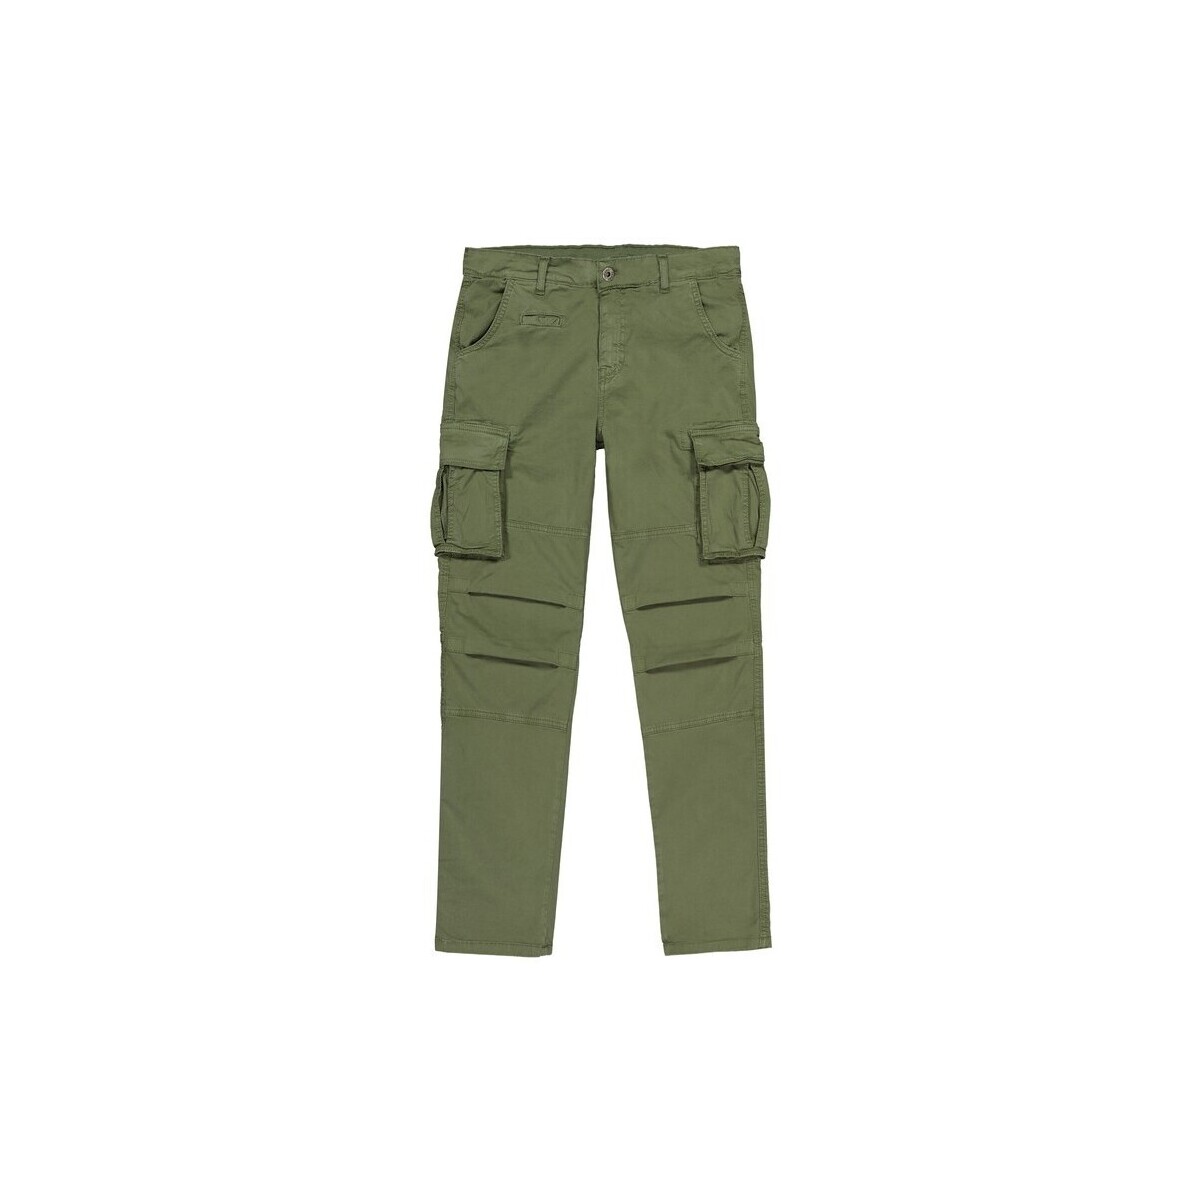 Textiel Heren Trainingsbroeken Scout Cargo Men Blue Pants (pnt2466-zwart) Groen